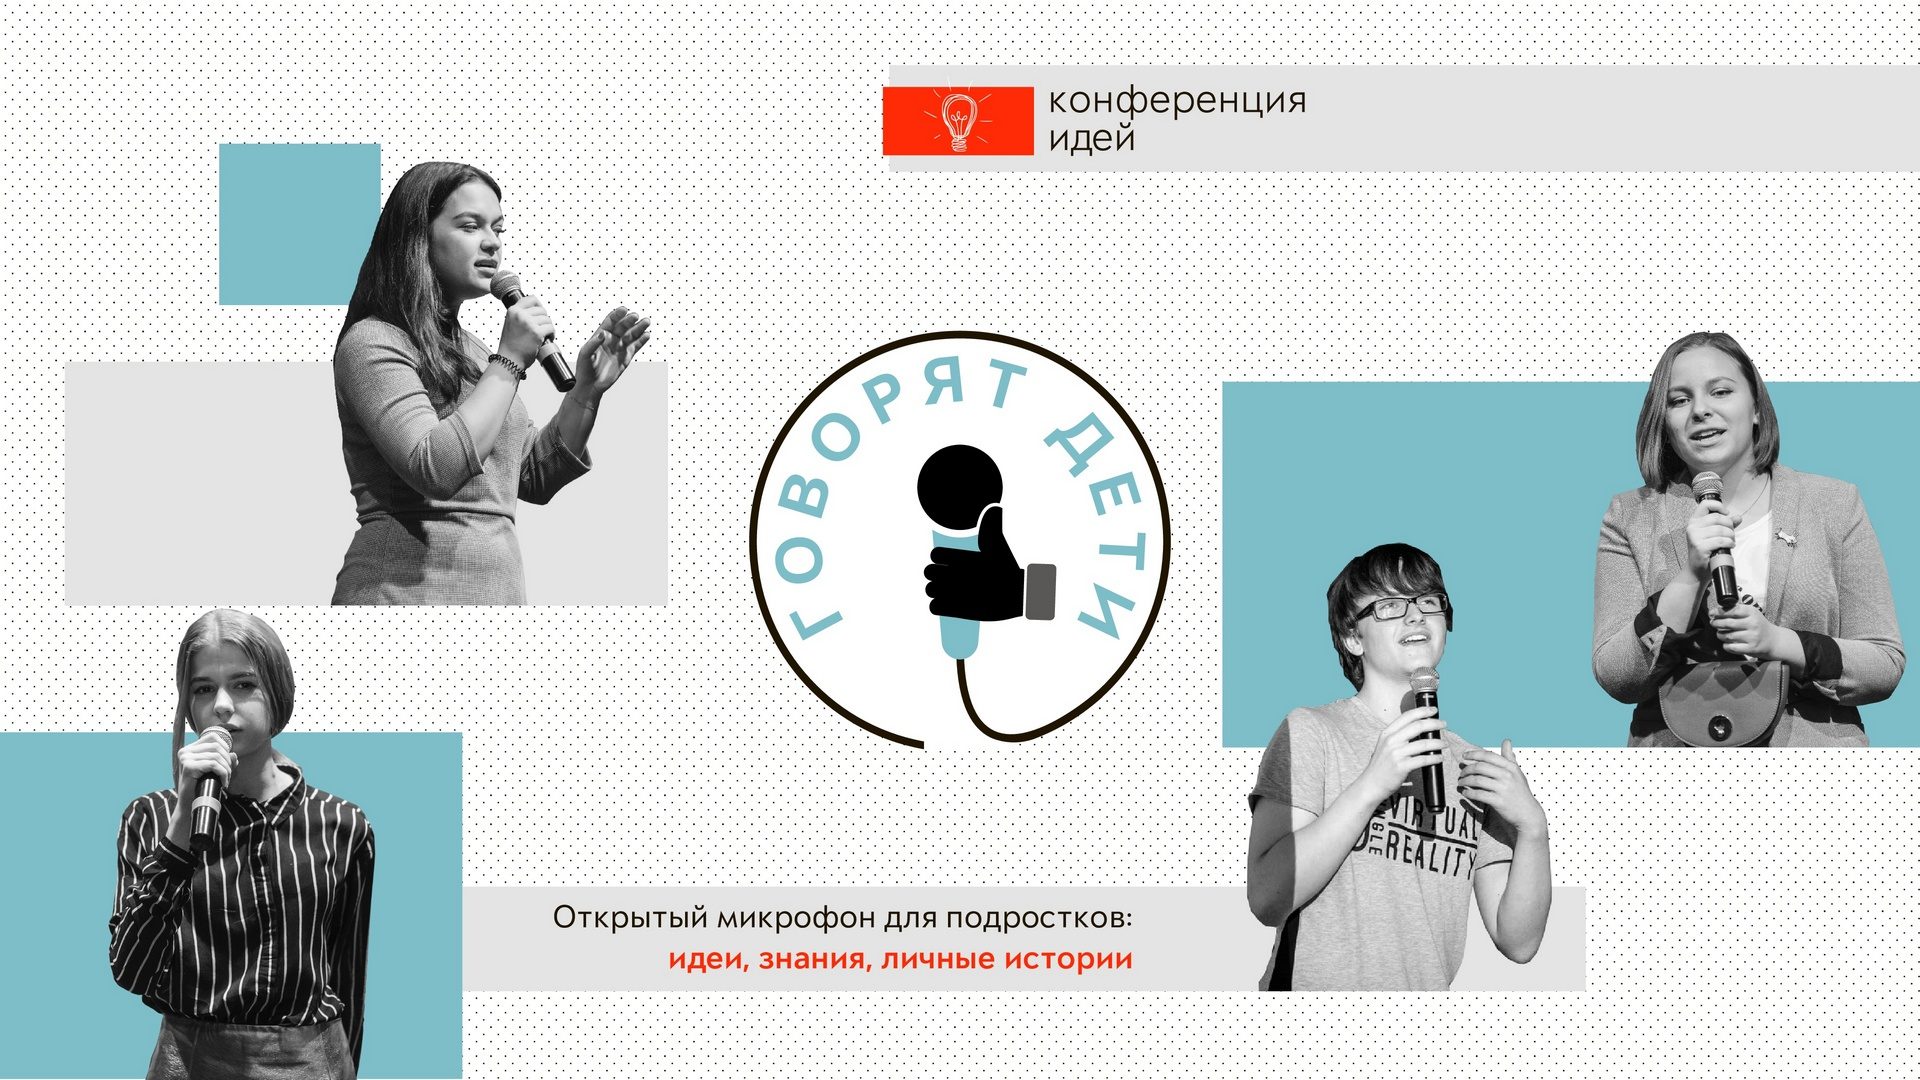 Конференция идей «Говорят дети» – события на сайте «Московские Сезоны»